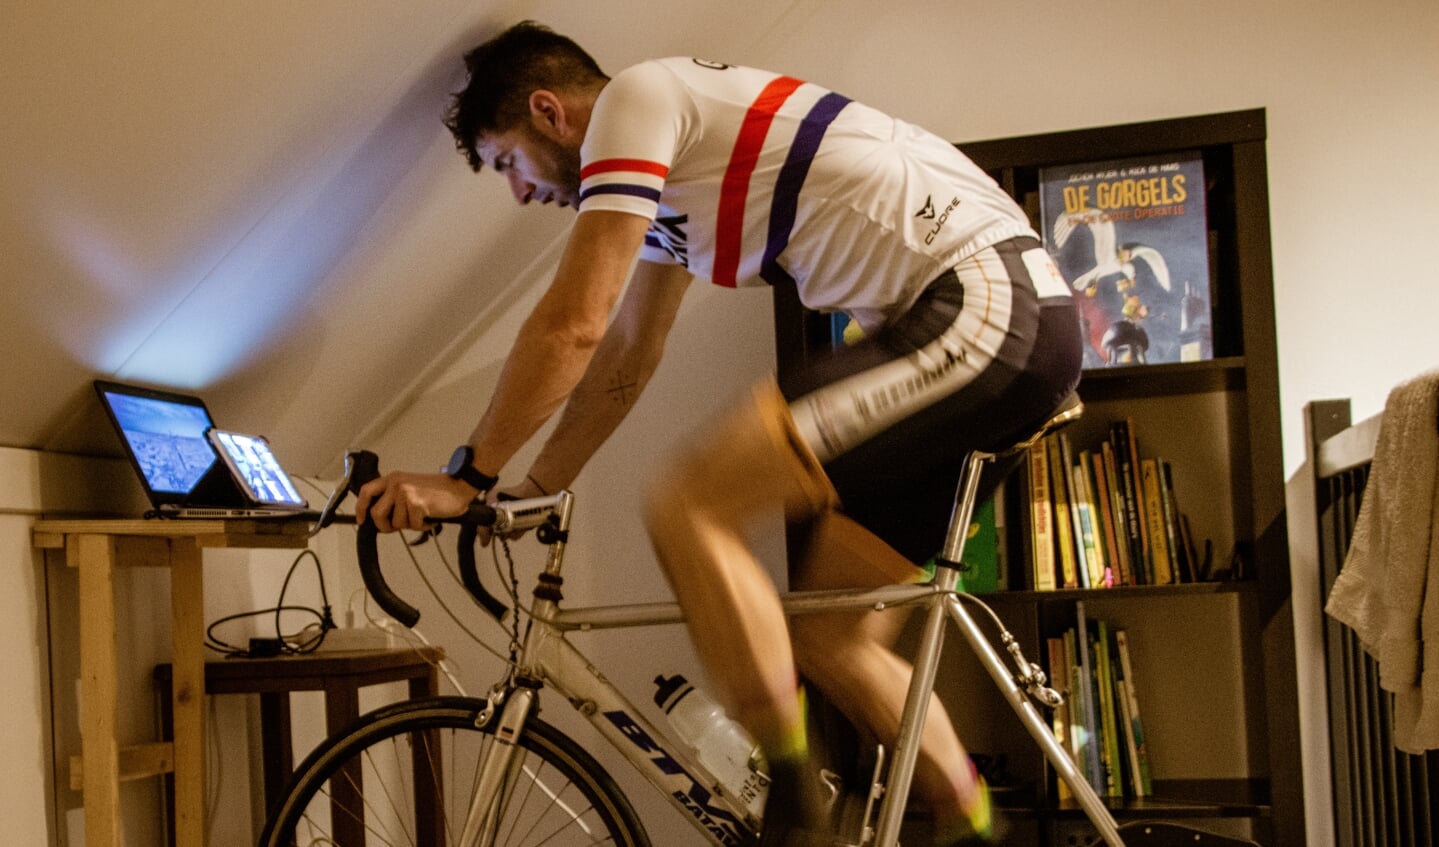 Vroeg donker? Sneeuwbuien? Het maakt Rob niks uit. Hij fietst in de avonduurtjes thuis op zijn interactieve fietstrainer. 